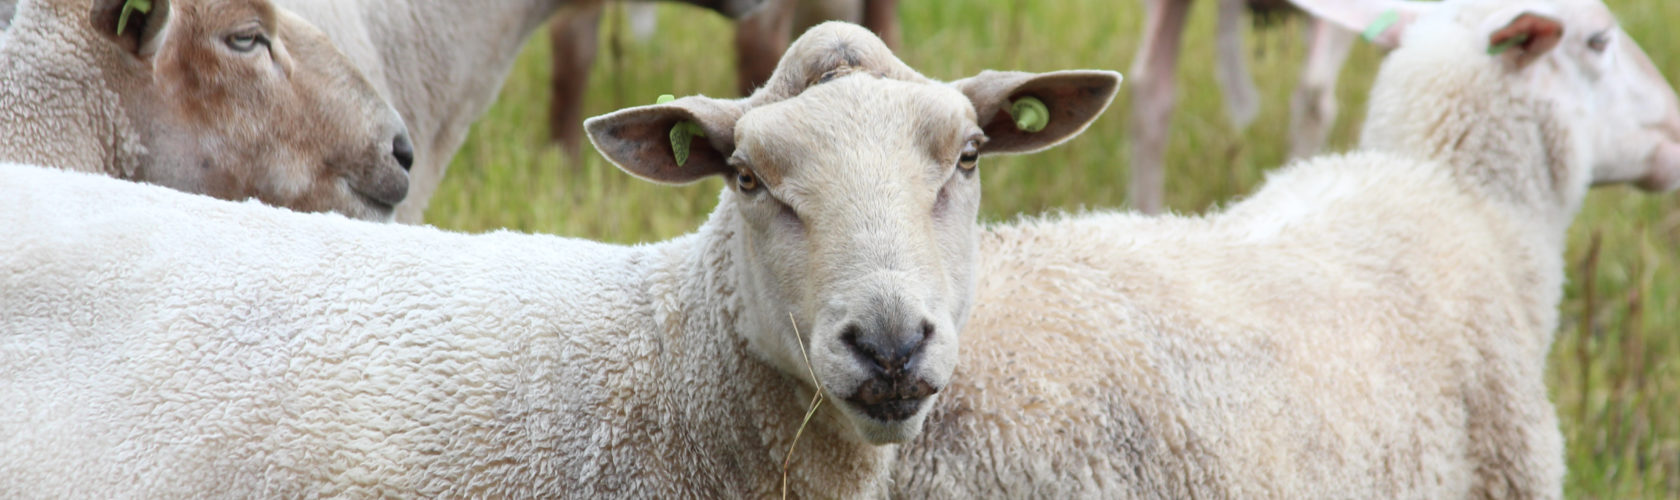 beeld schapen